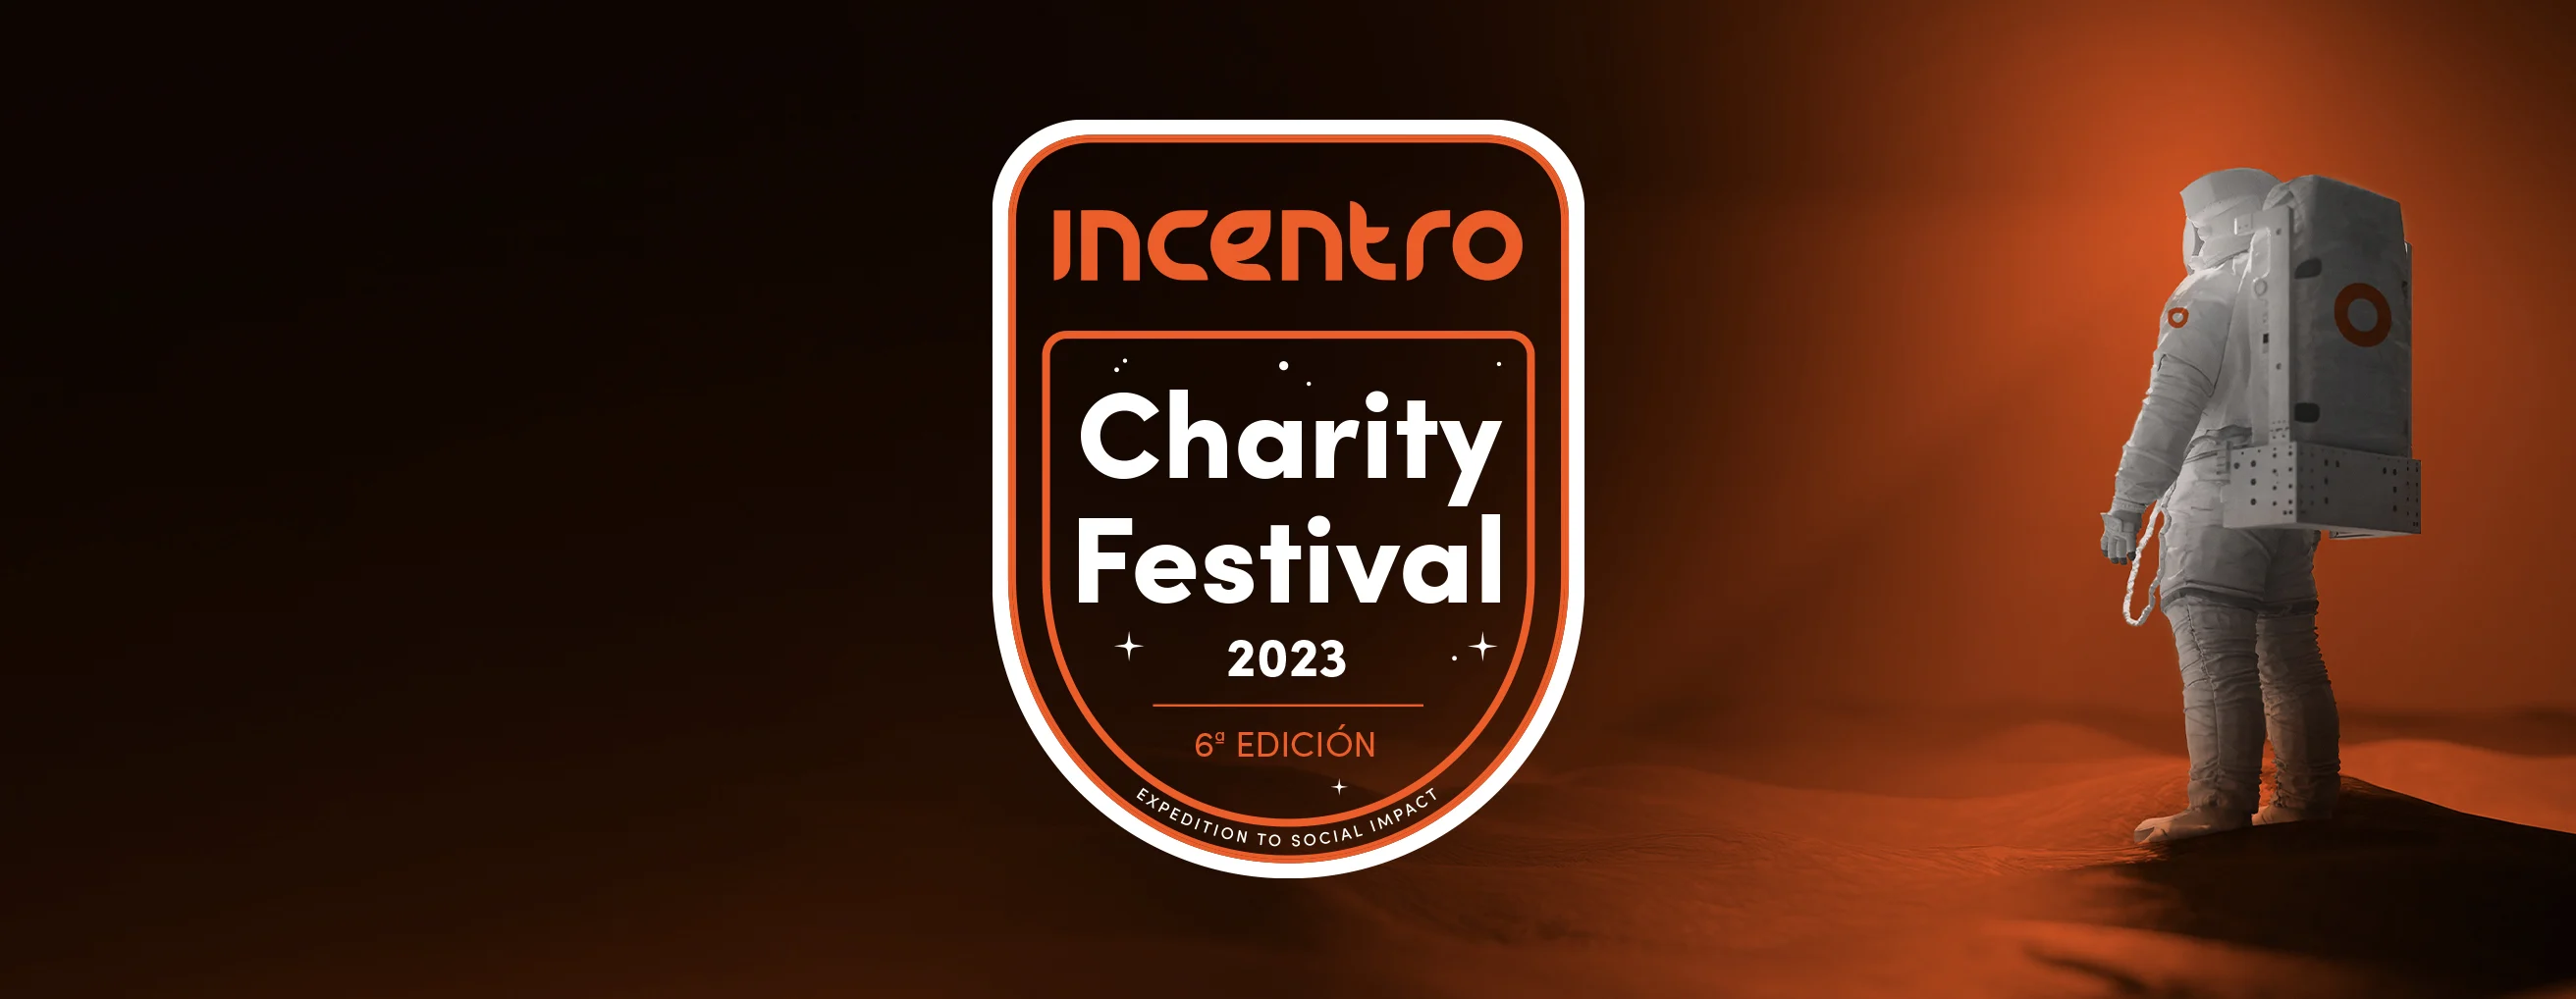 Llega la sexta edición del Incentro Charity Festival, una expedición con impacto social